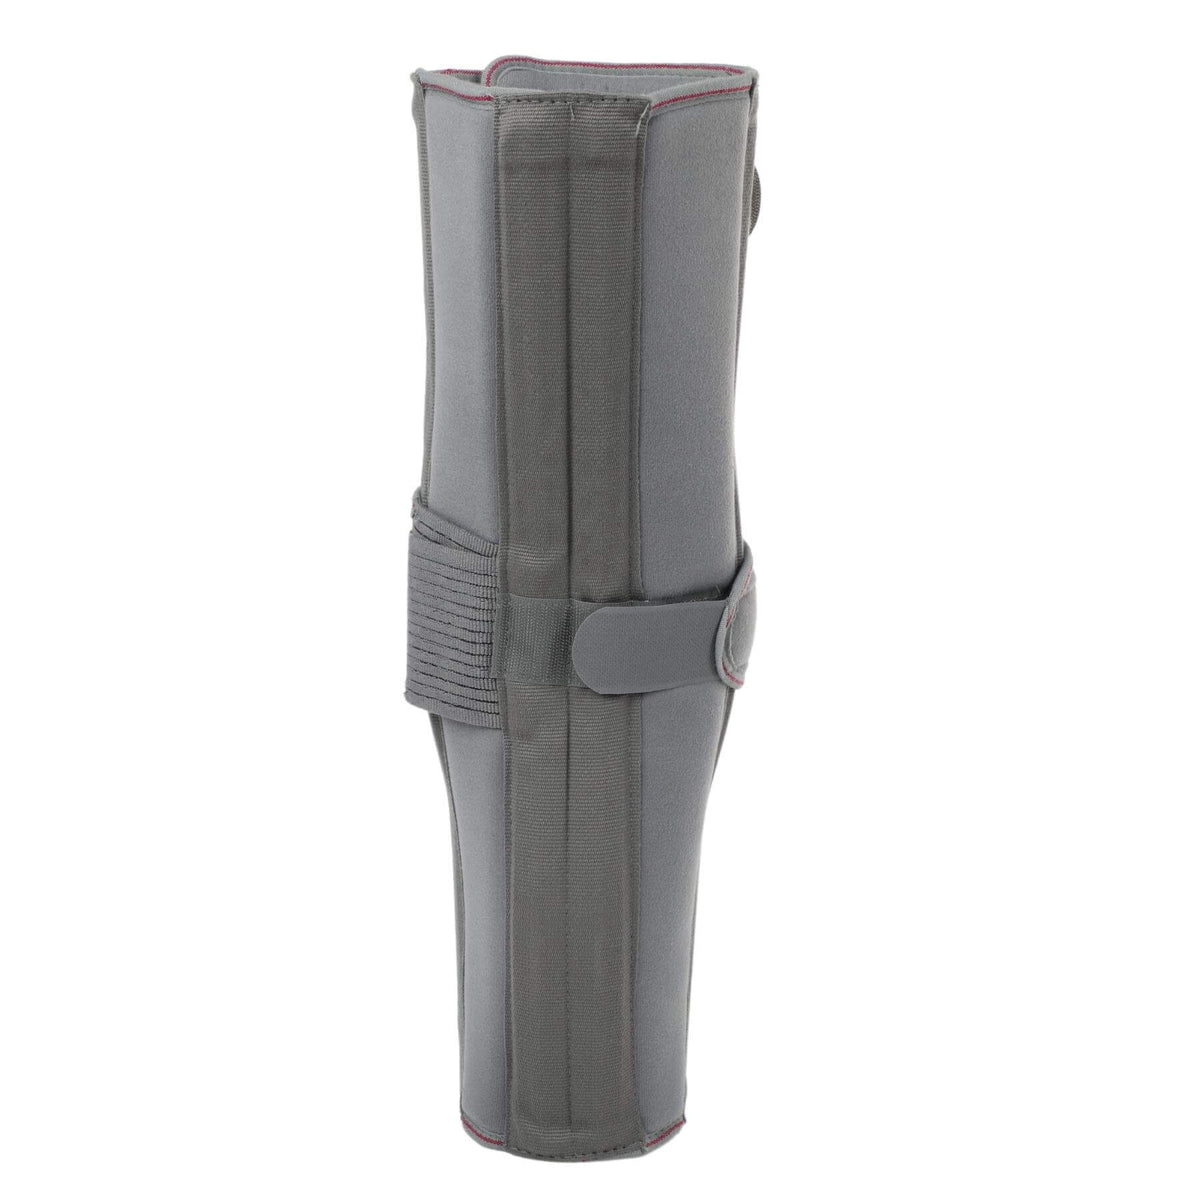 Premium Knee Immobiliser 48cm long to immobilise the knee or leg-6